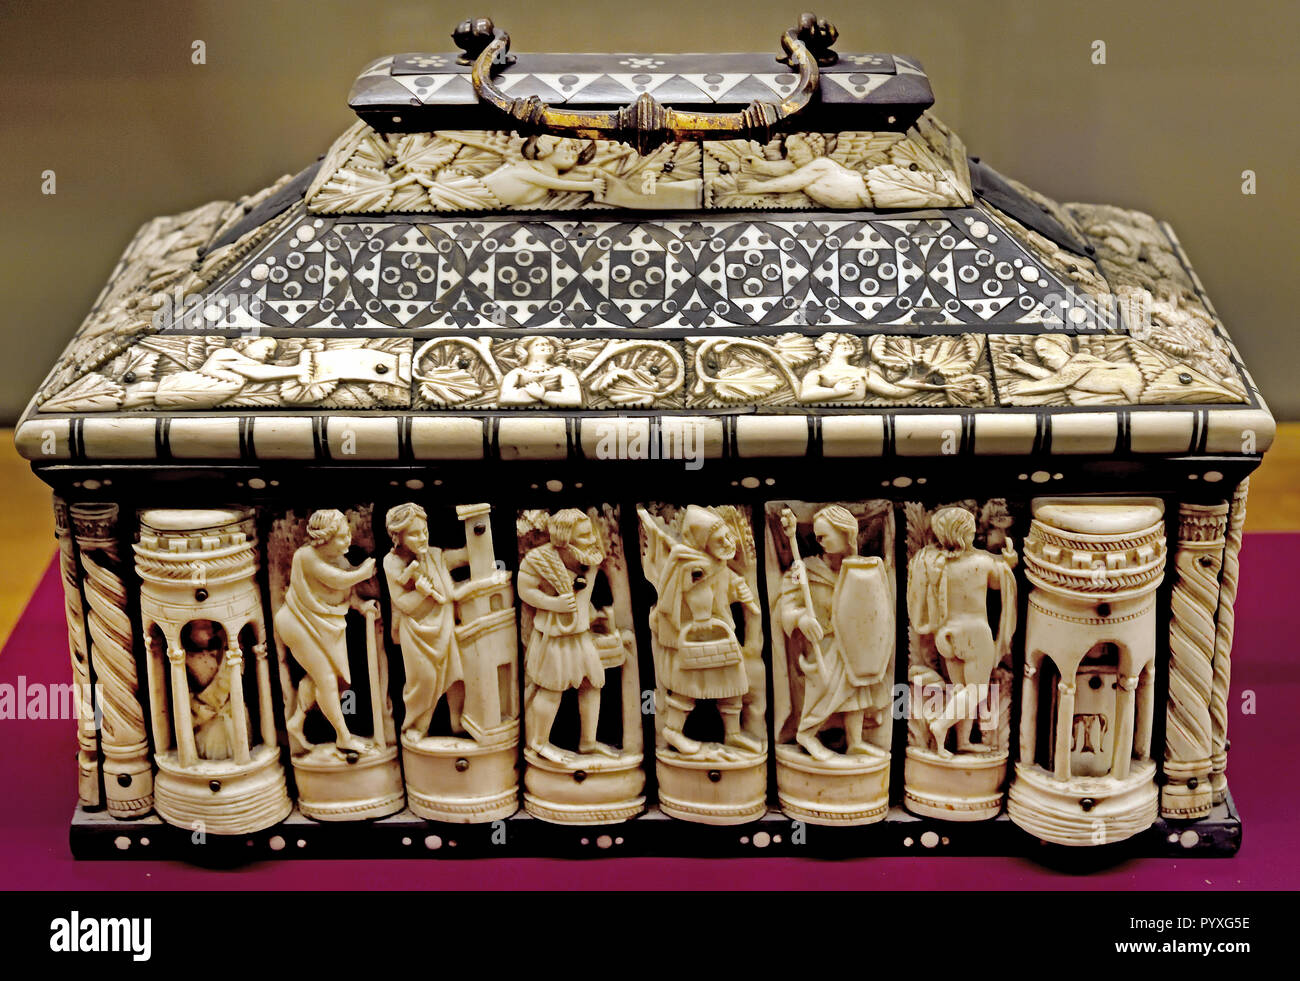 Elfenbein Schatulle (Christian mit Heiligen und Engel) Embriachi's Werkstatt aus dem 15. Jahrhundert Knochen geschnitzt, mit eingelegten ebonyMuseum für Antike Kunst im Castello Sforzesco - Schloss Sforza in Mailand Italien Stockfoto